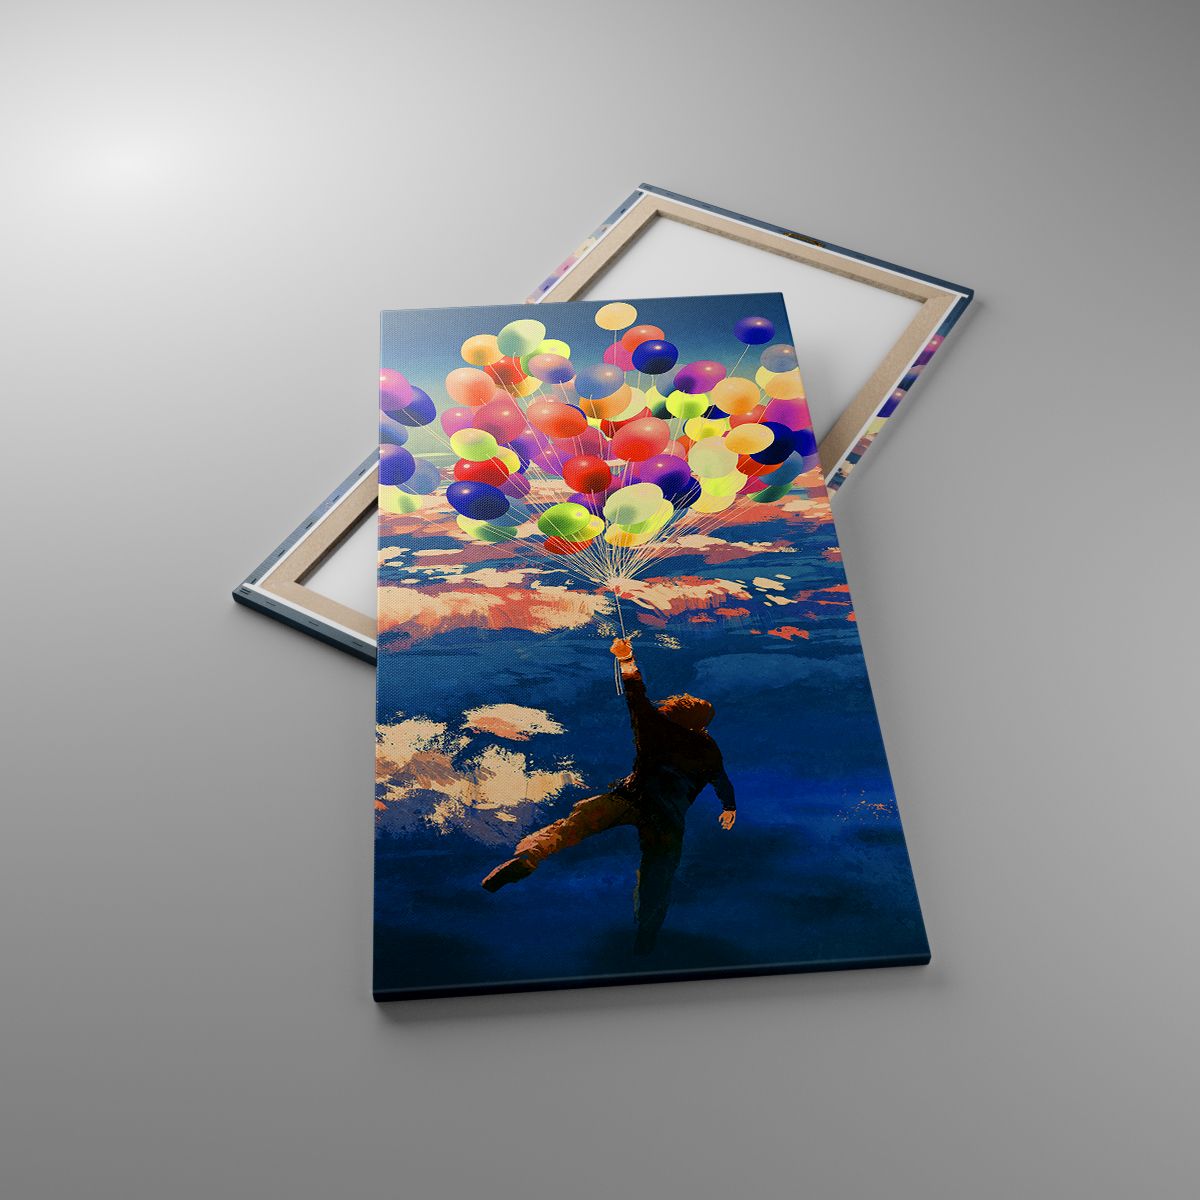 Leinwandbild Für Kinder, Leinwandbild Bunte Luftballons, Leinwandbild Abstraktion, Leinwandbild Kunst, Leinwandbild Traum